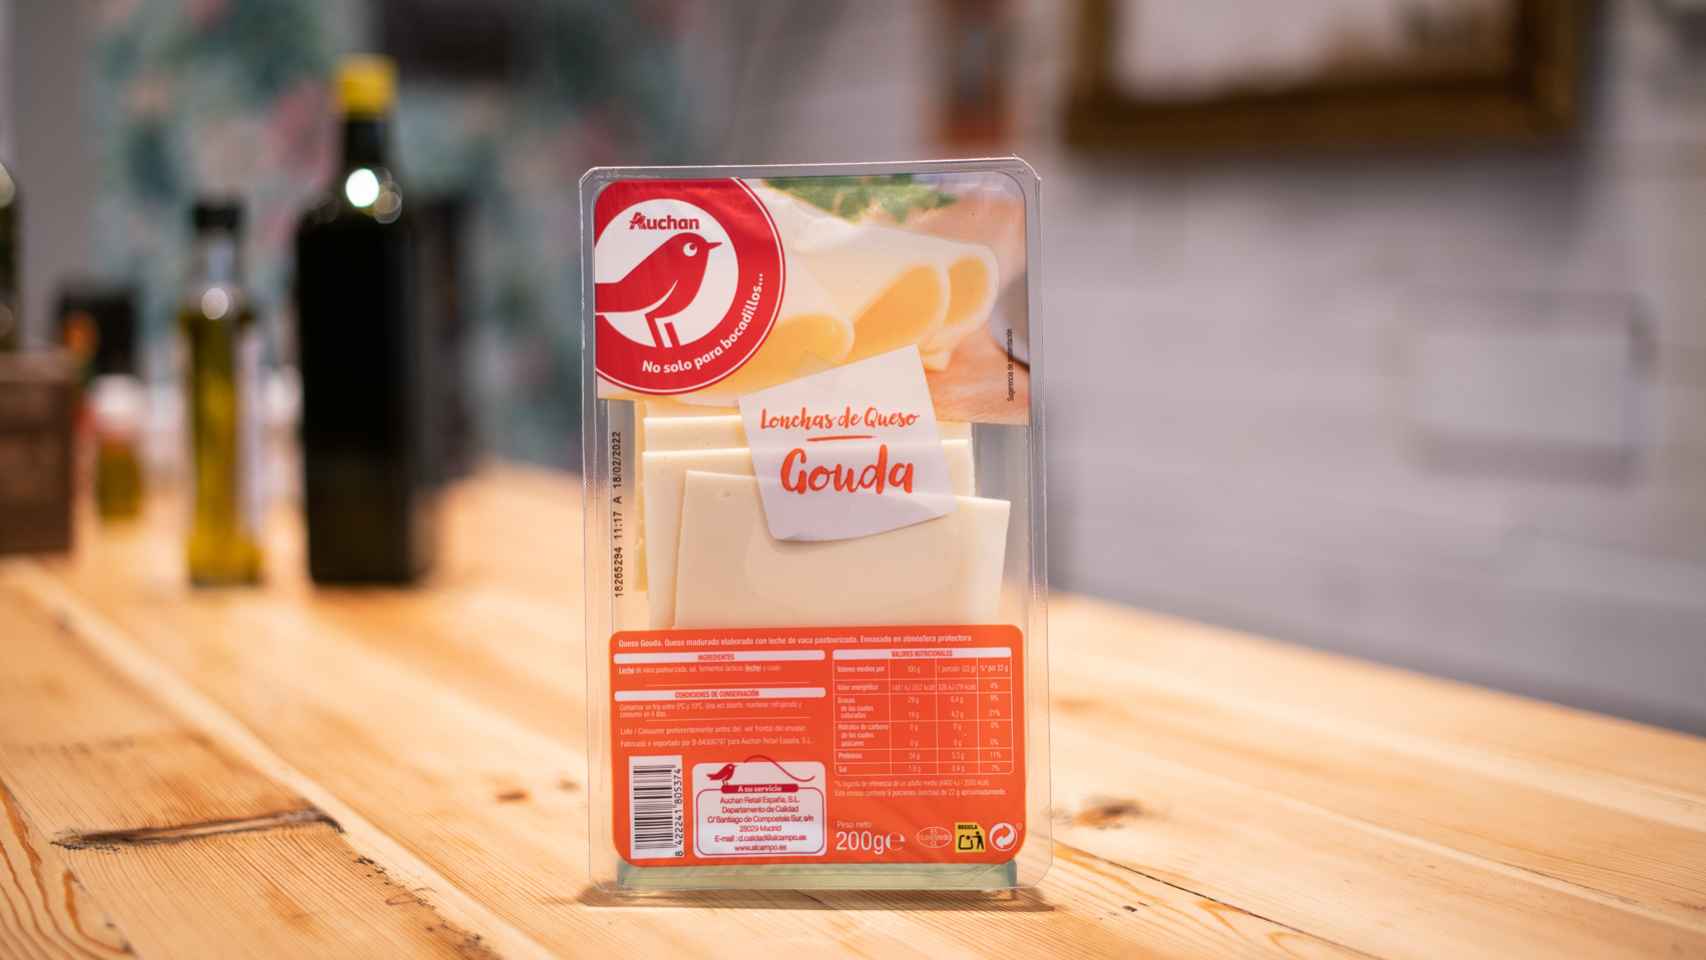 El paquete de queso Gouda en lonchas de Auchan, la marca blanca de Alcampo.